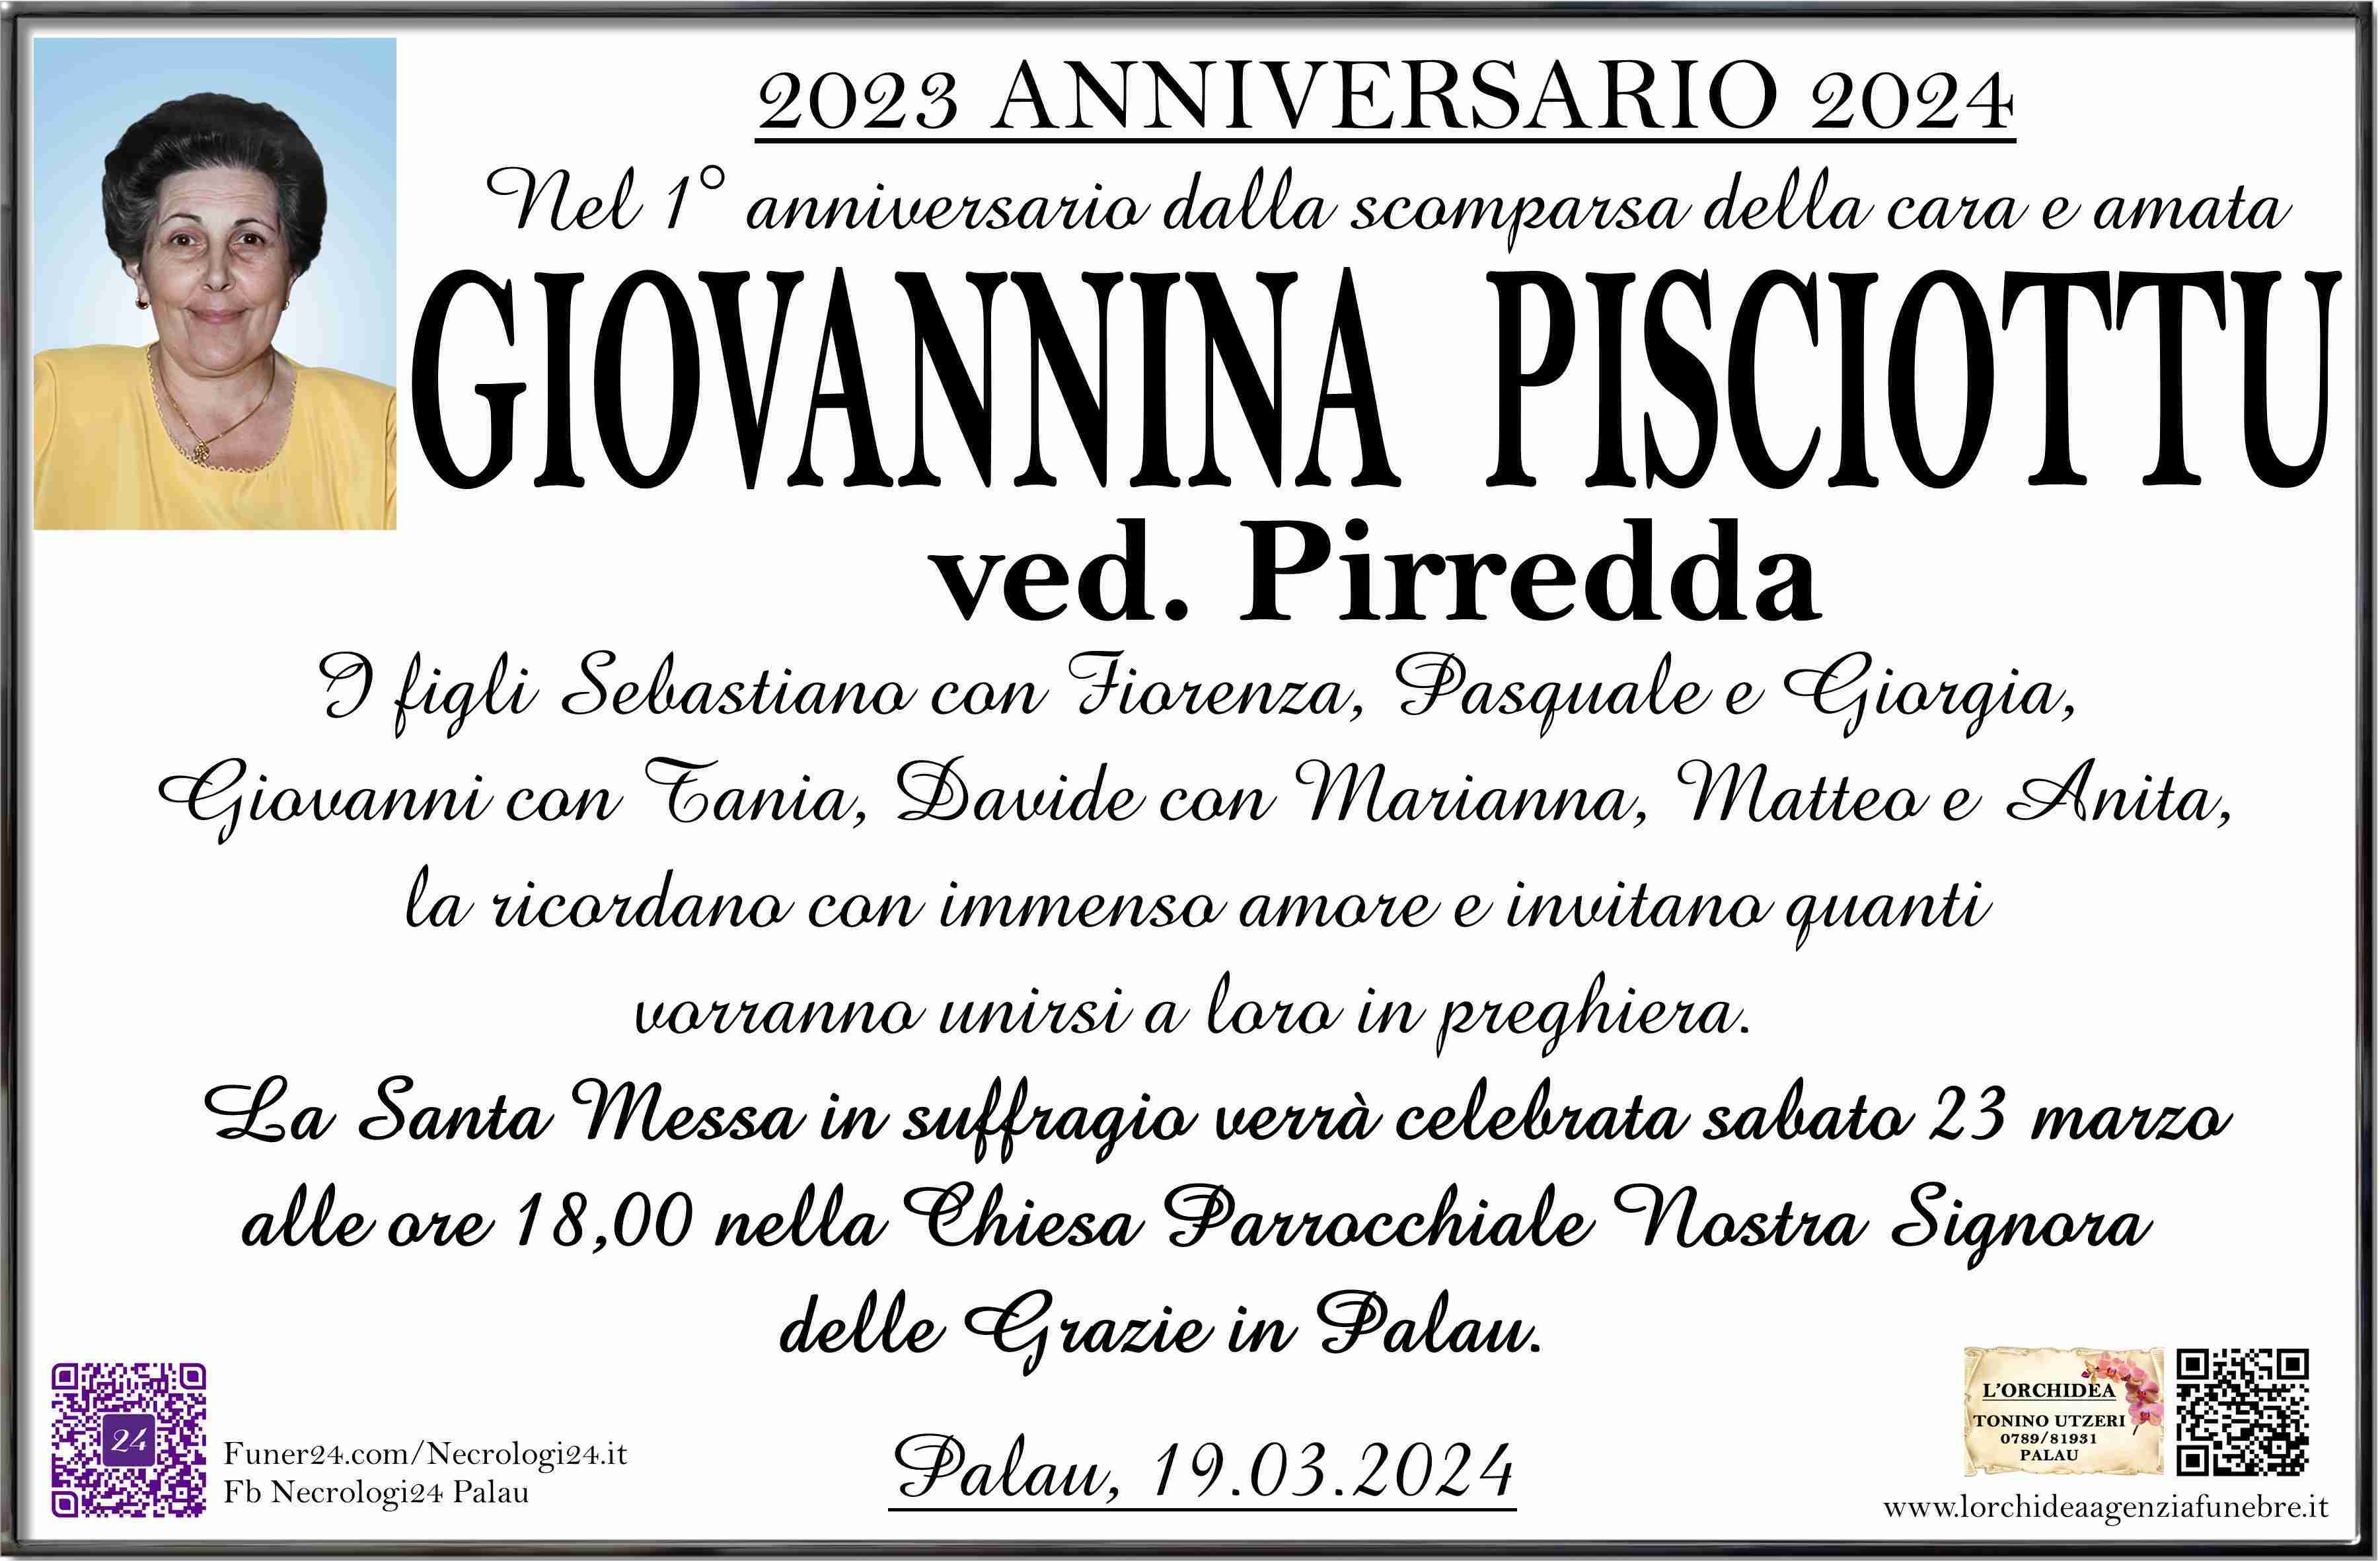 Giovannina Pisciottu